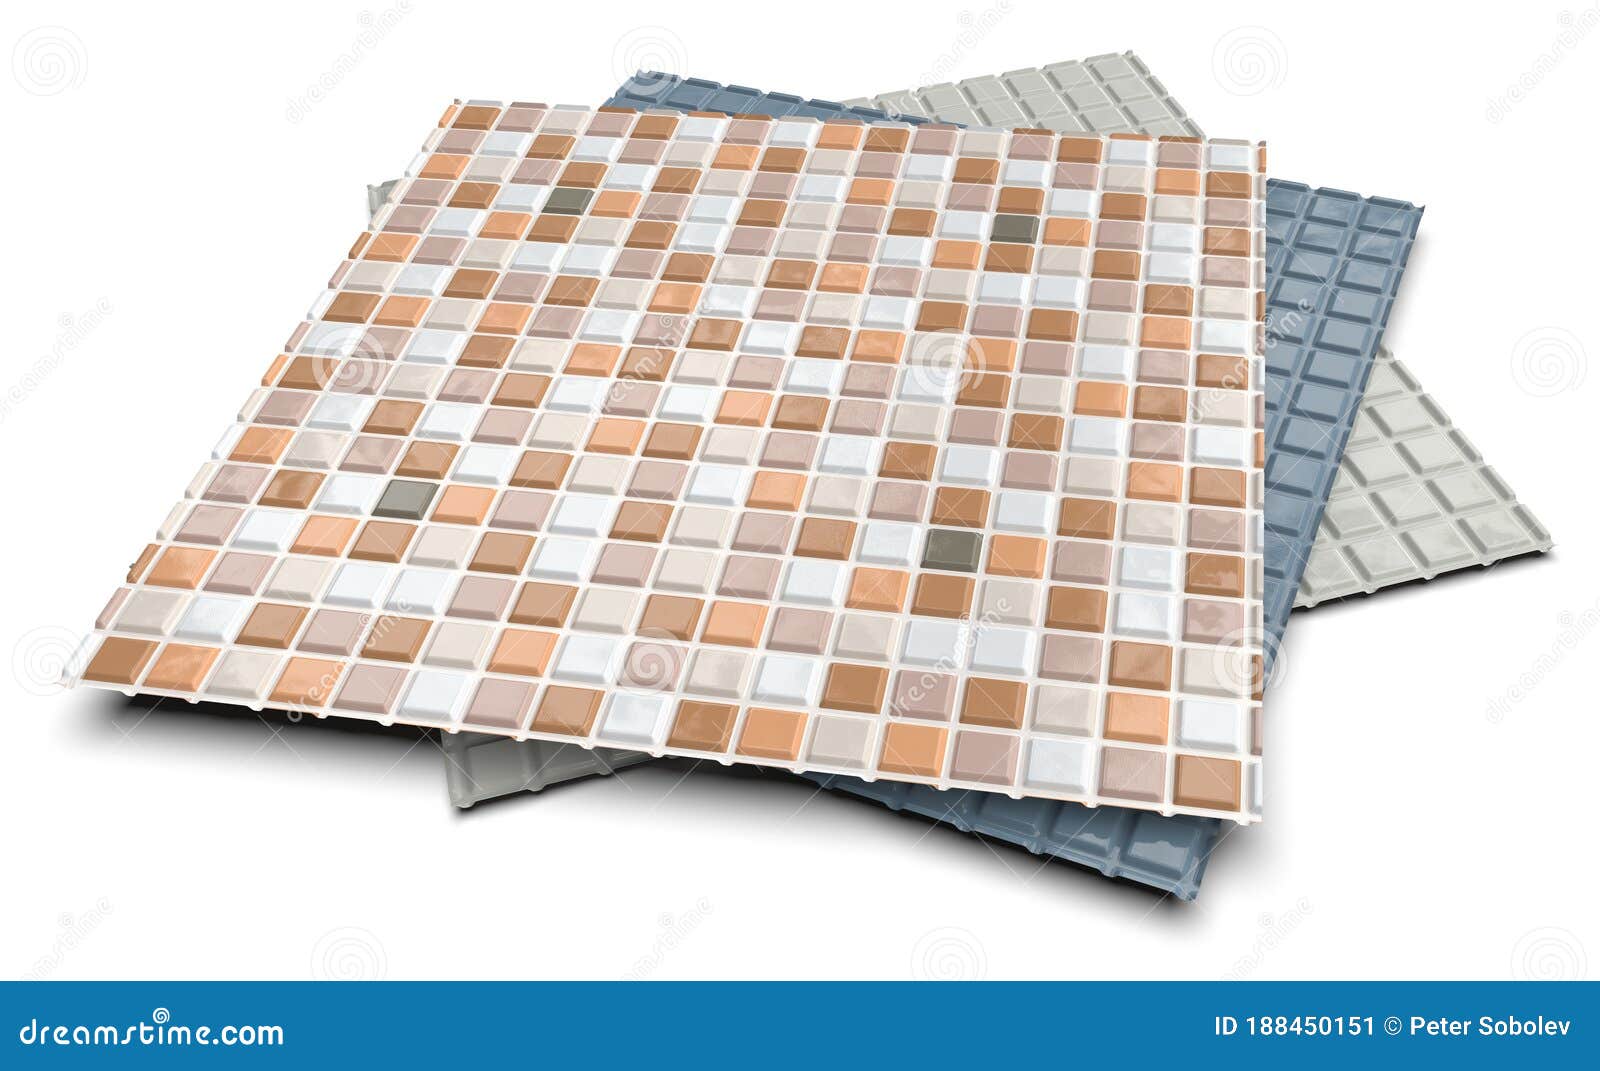 Plastic Backsplash Tiles / Plastic Backsplash Tile Wayfair - Stop in